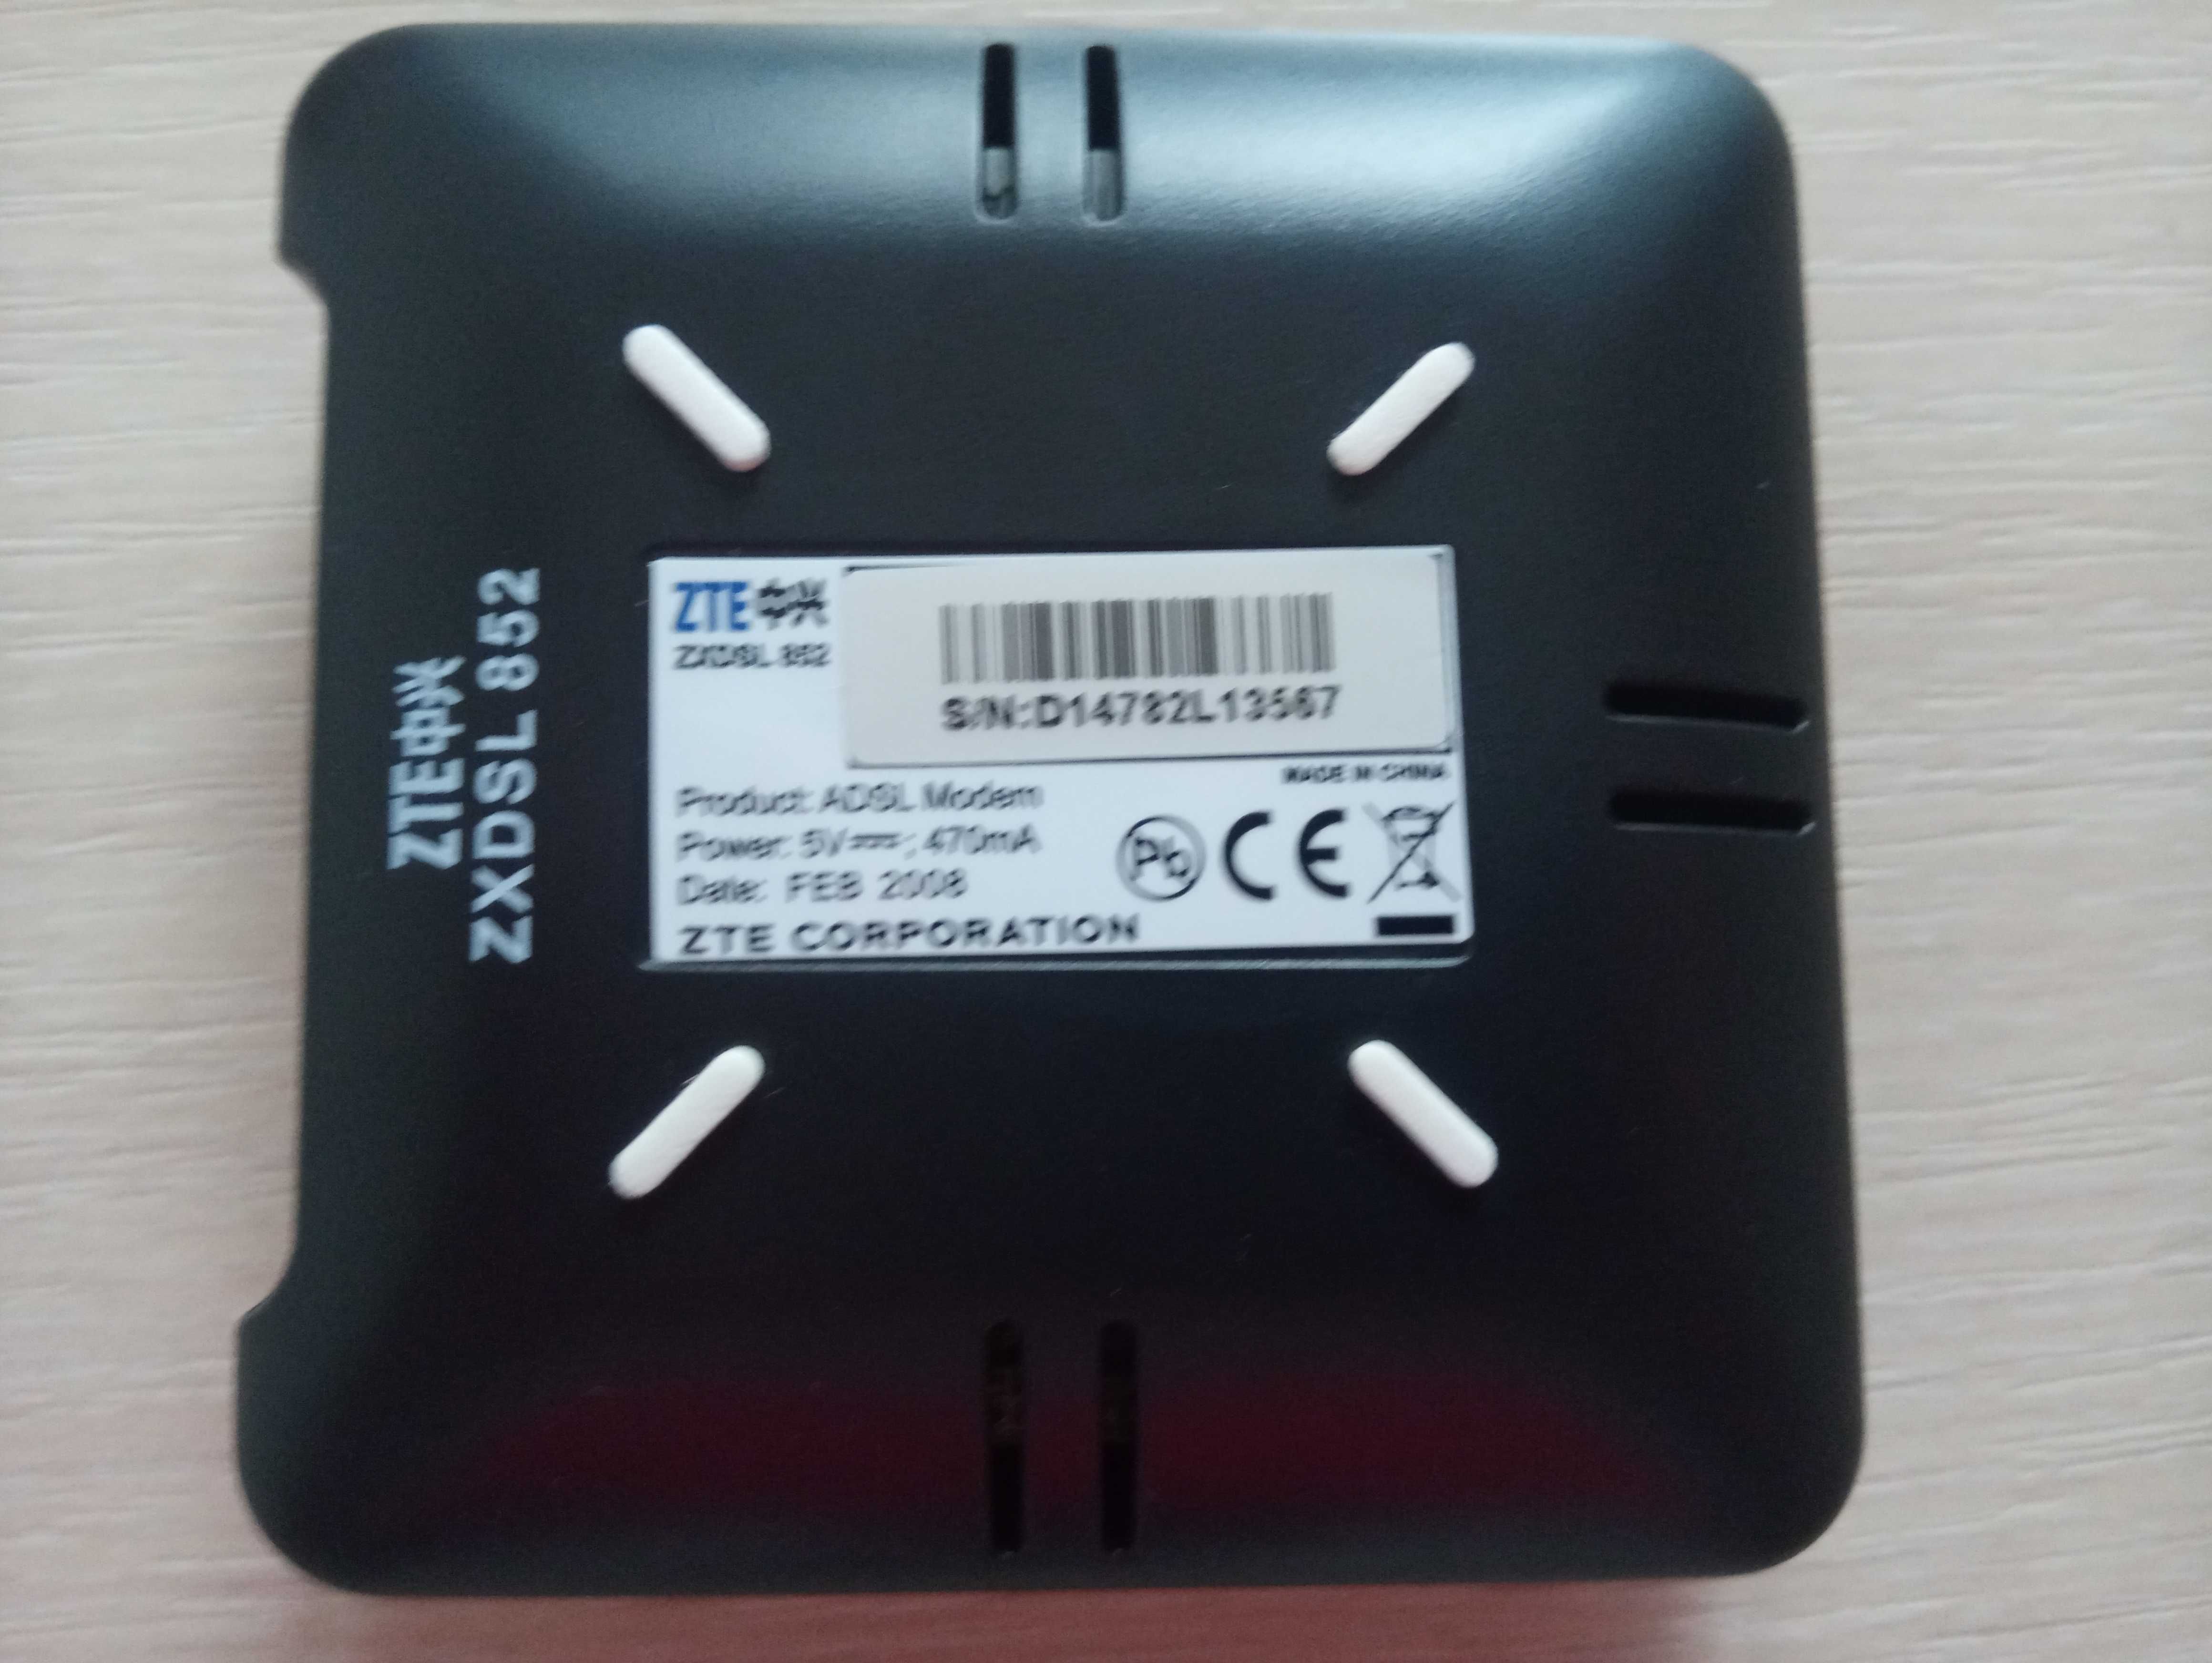 Modem USB ZXDSL 852 + kable + płyta